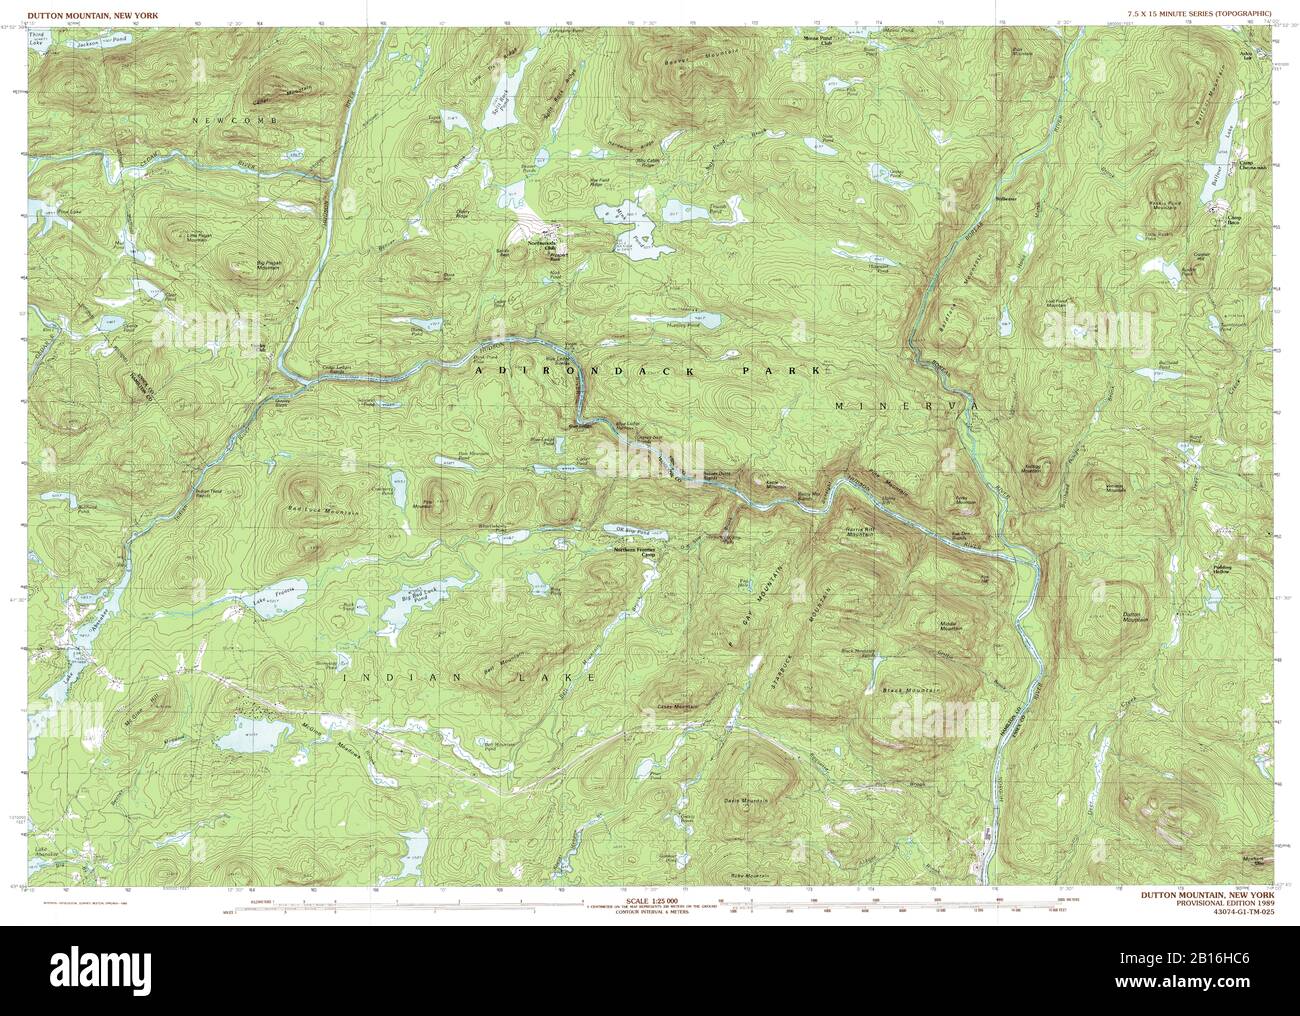 Vista muy detallada del mapa topográfico 1989 de Dutton Mountain, NY Foto de stock